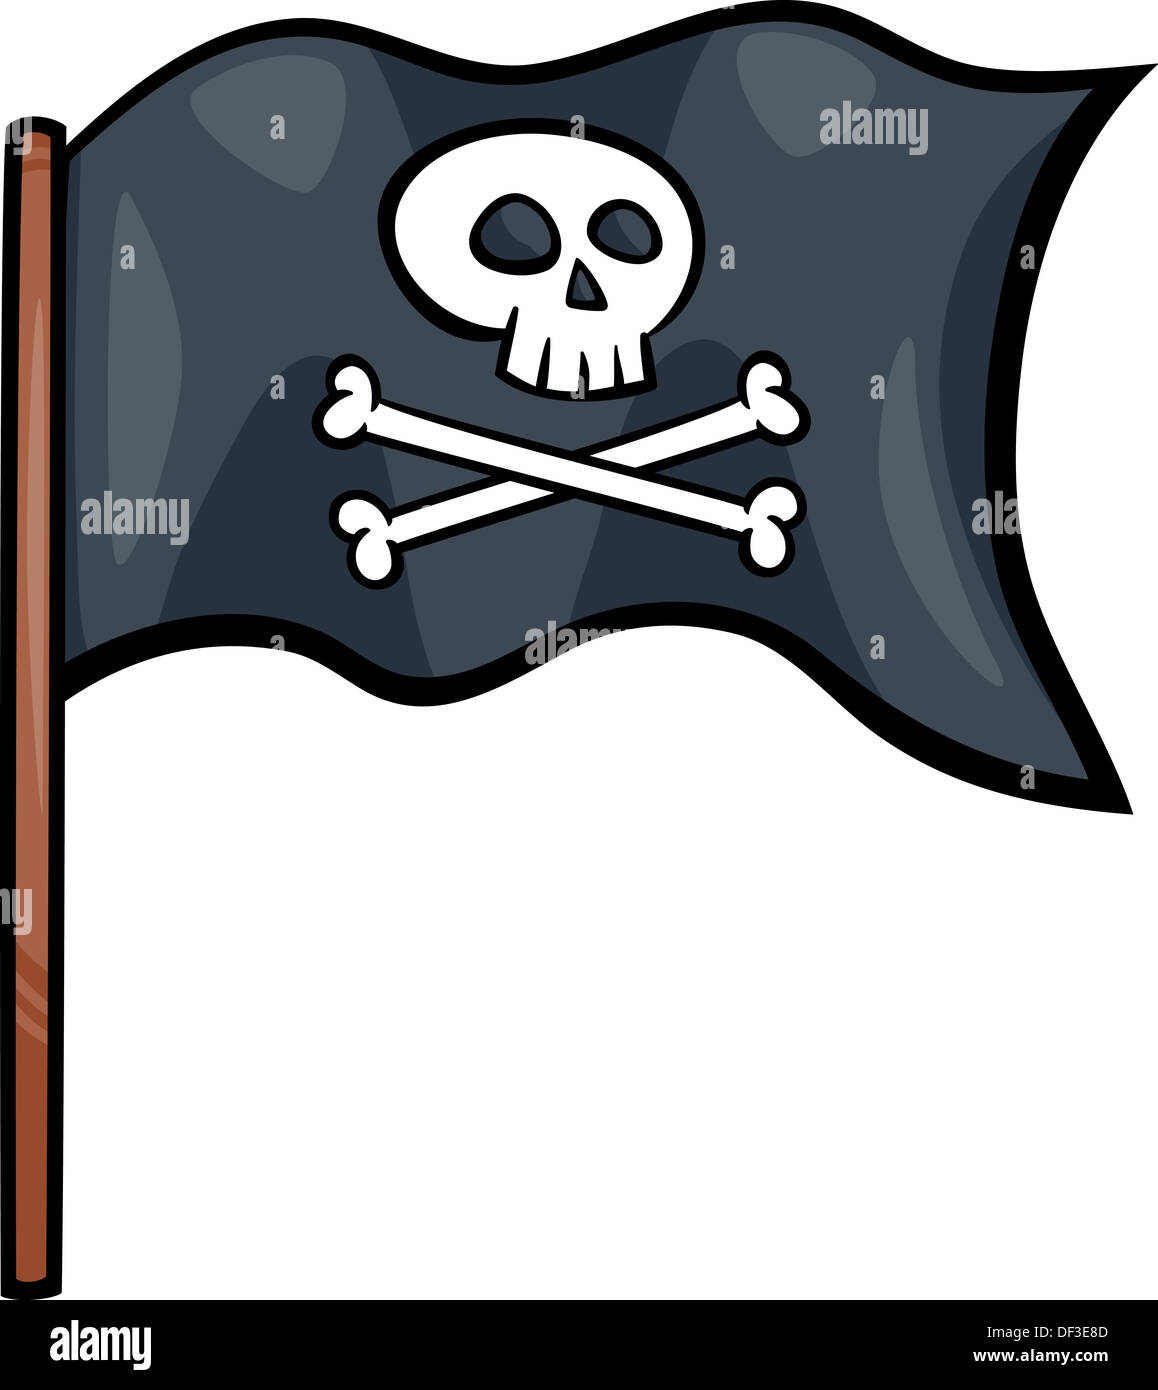 Bandera pirata de dibujos animados fotografías e imágenes de alta